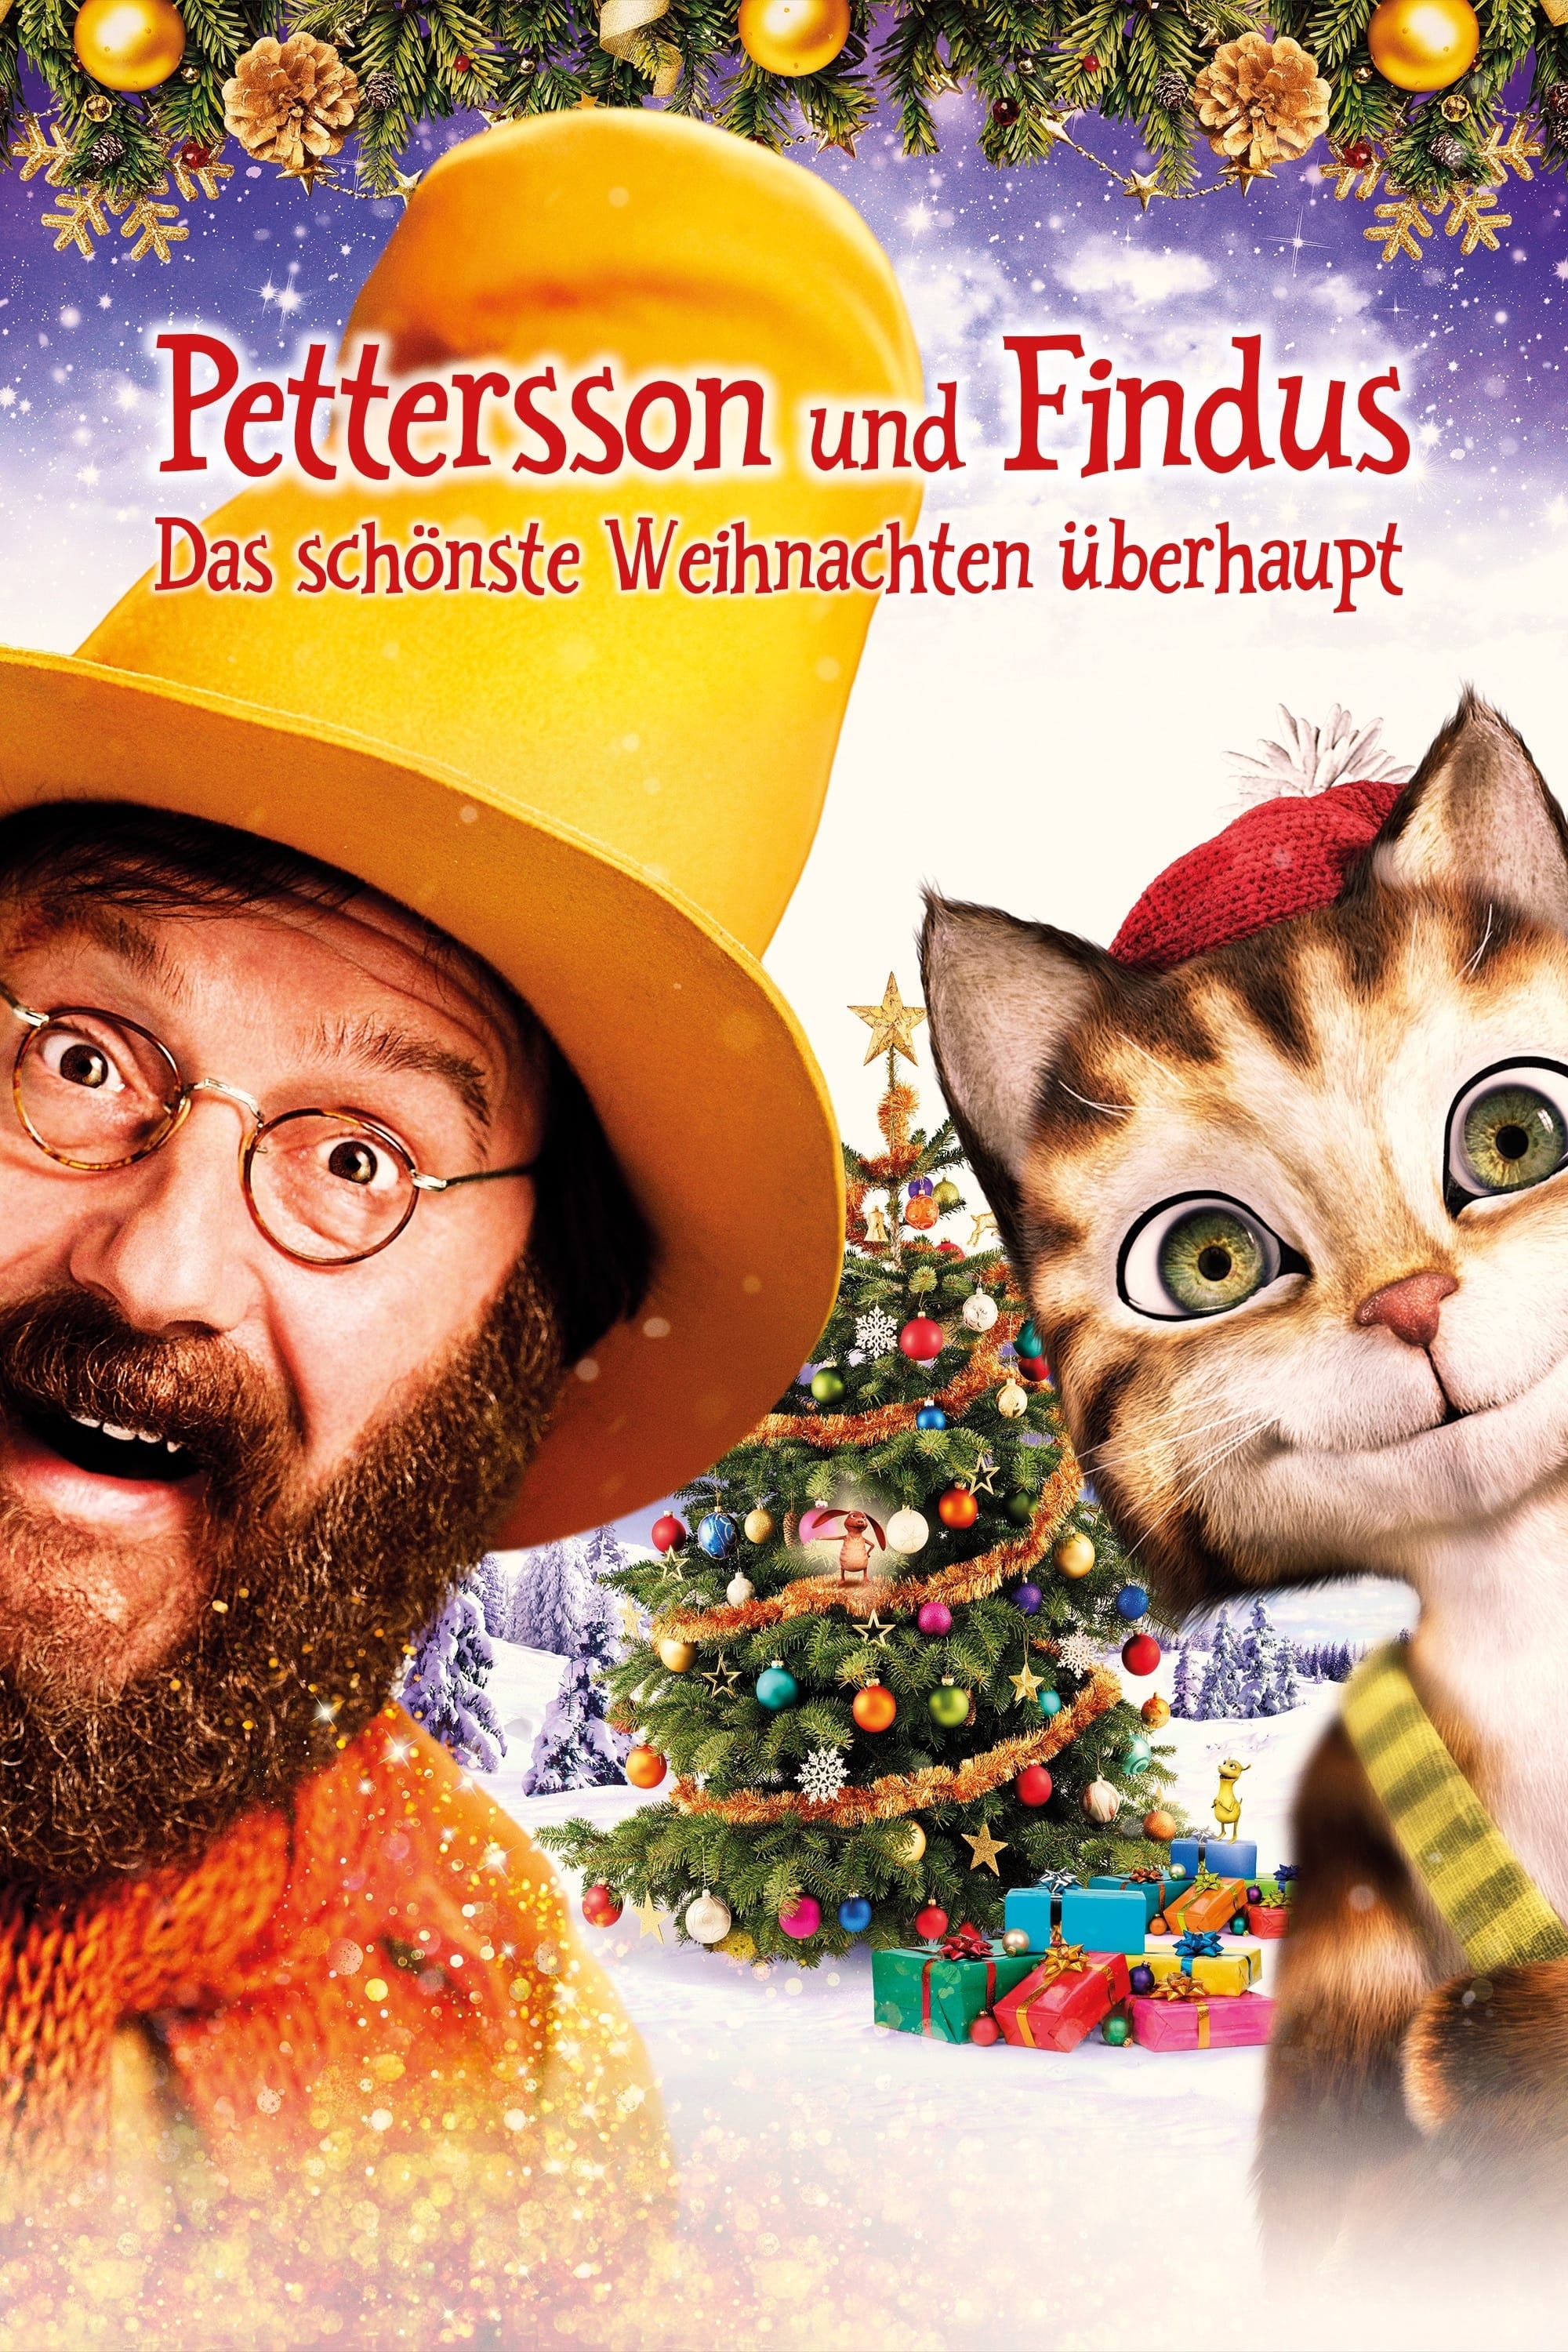 Le Noël de Pettson & Picpus